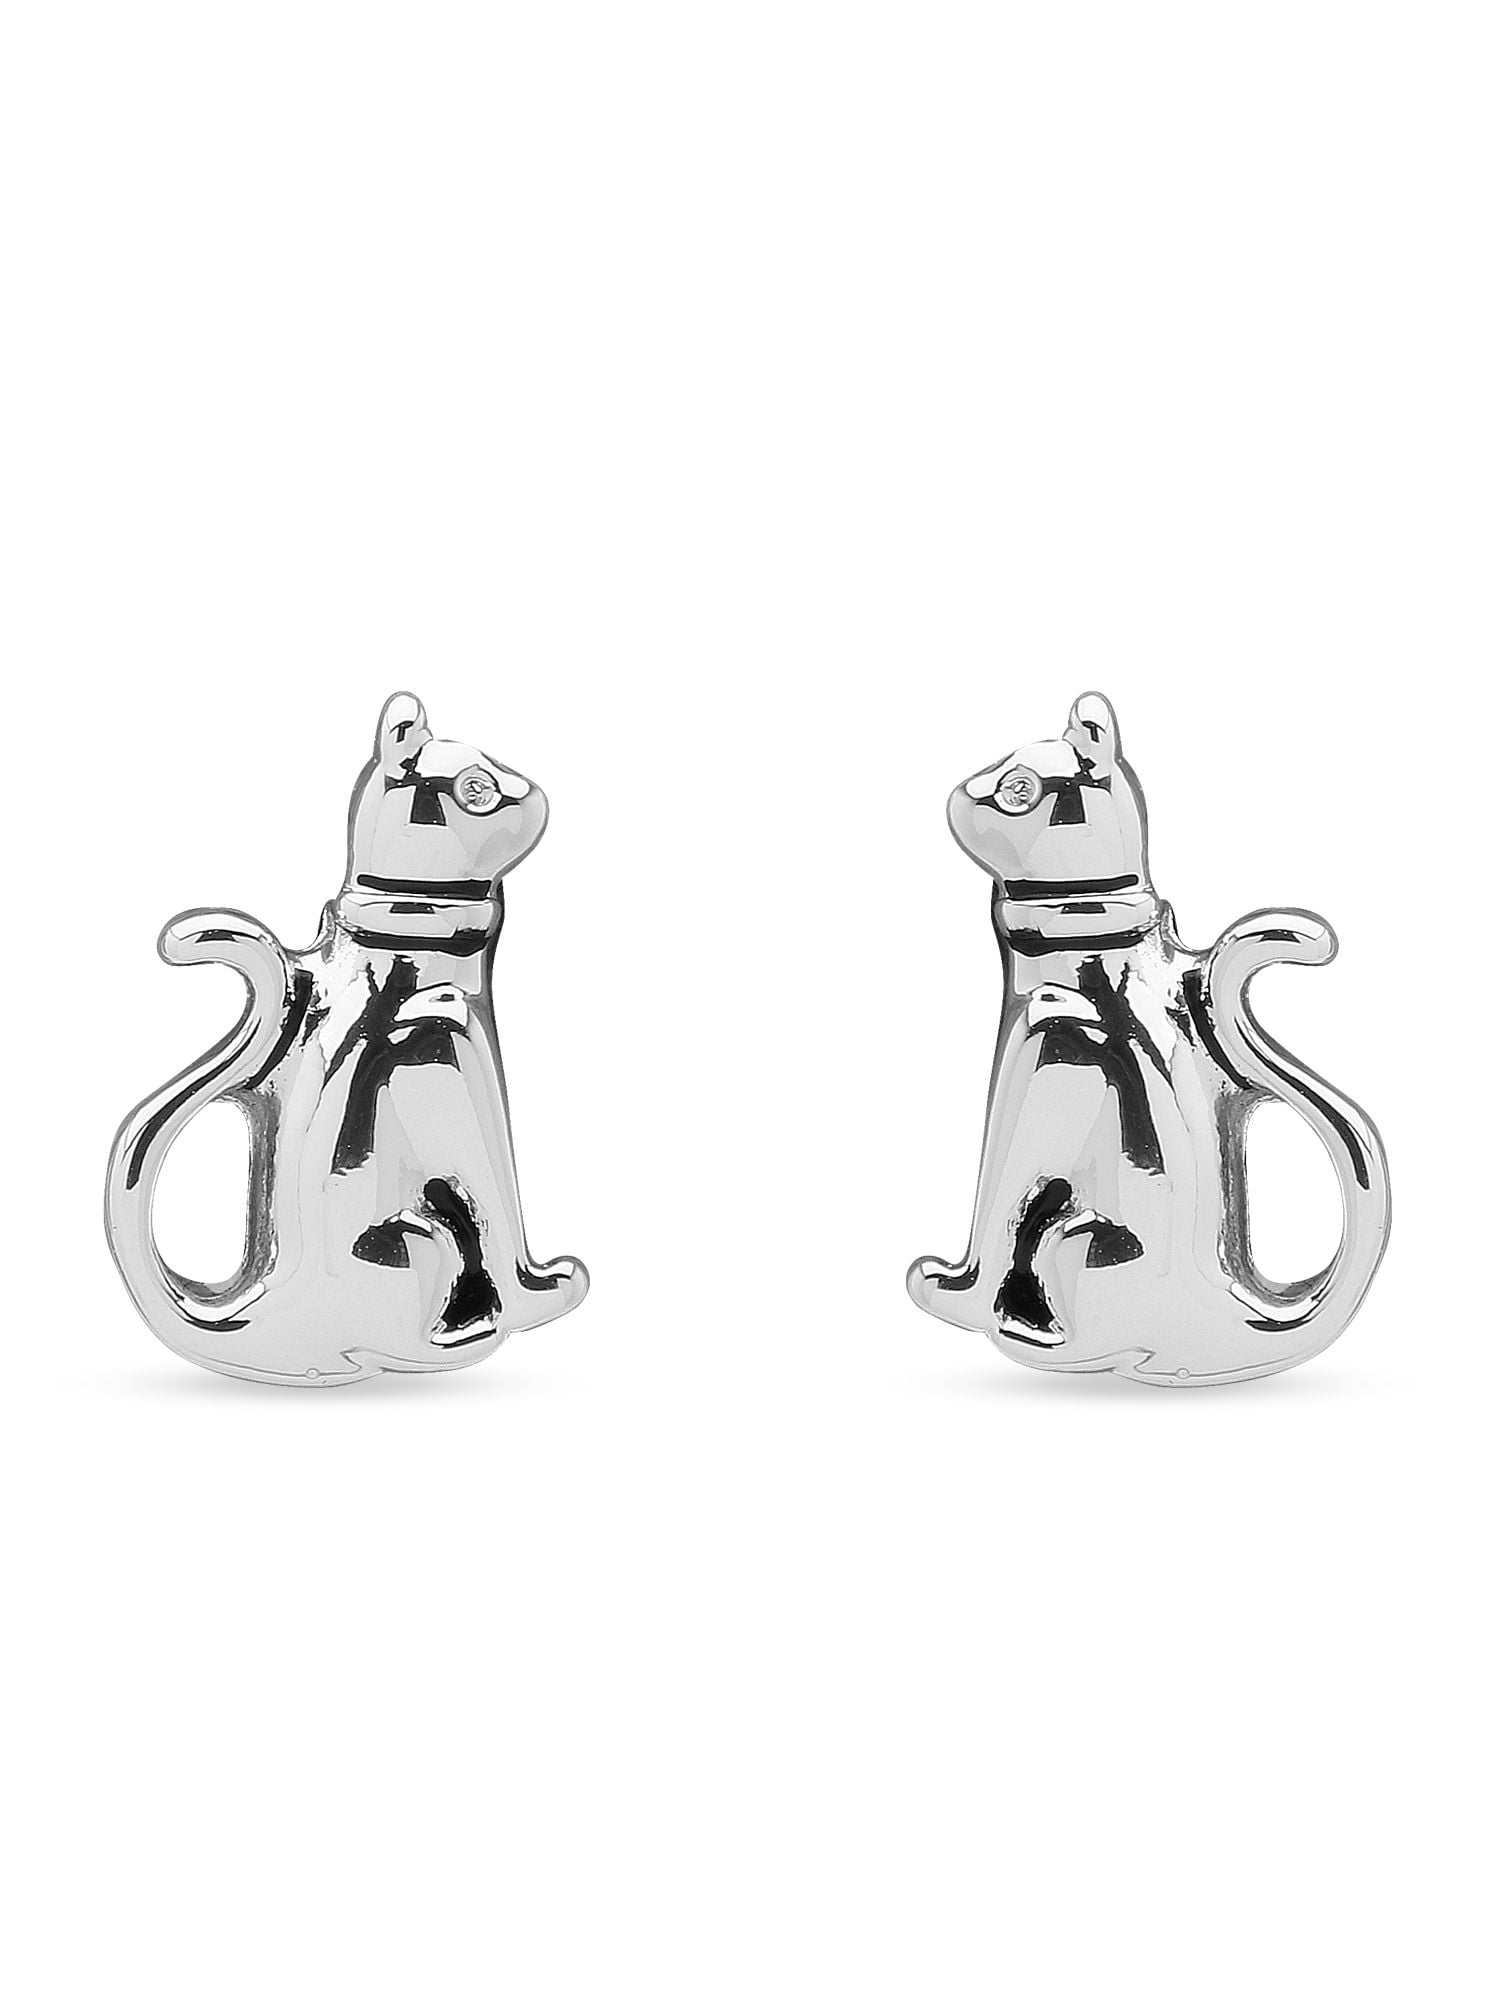 Details about   925 Sterling Silver Pink or White Cat Kitten Dangle Drop Earrings Girls Women 